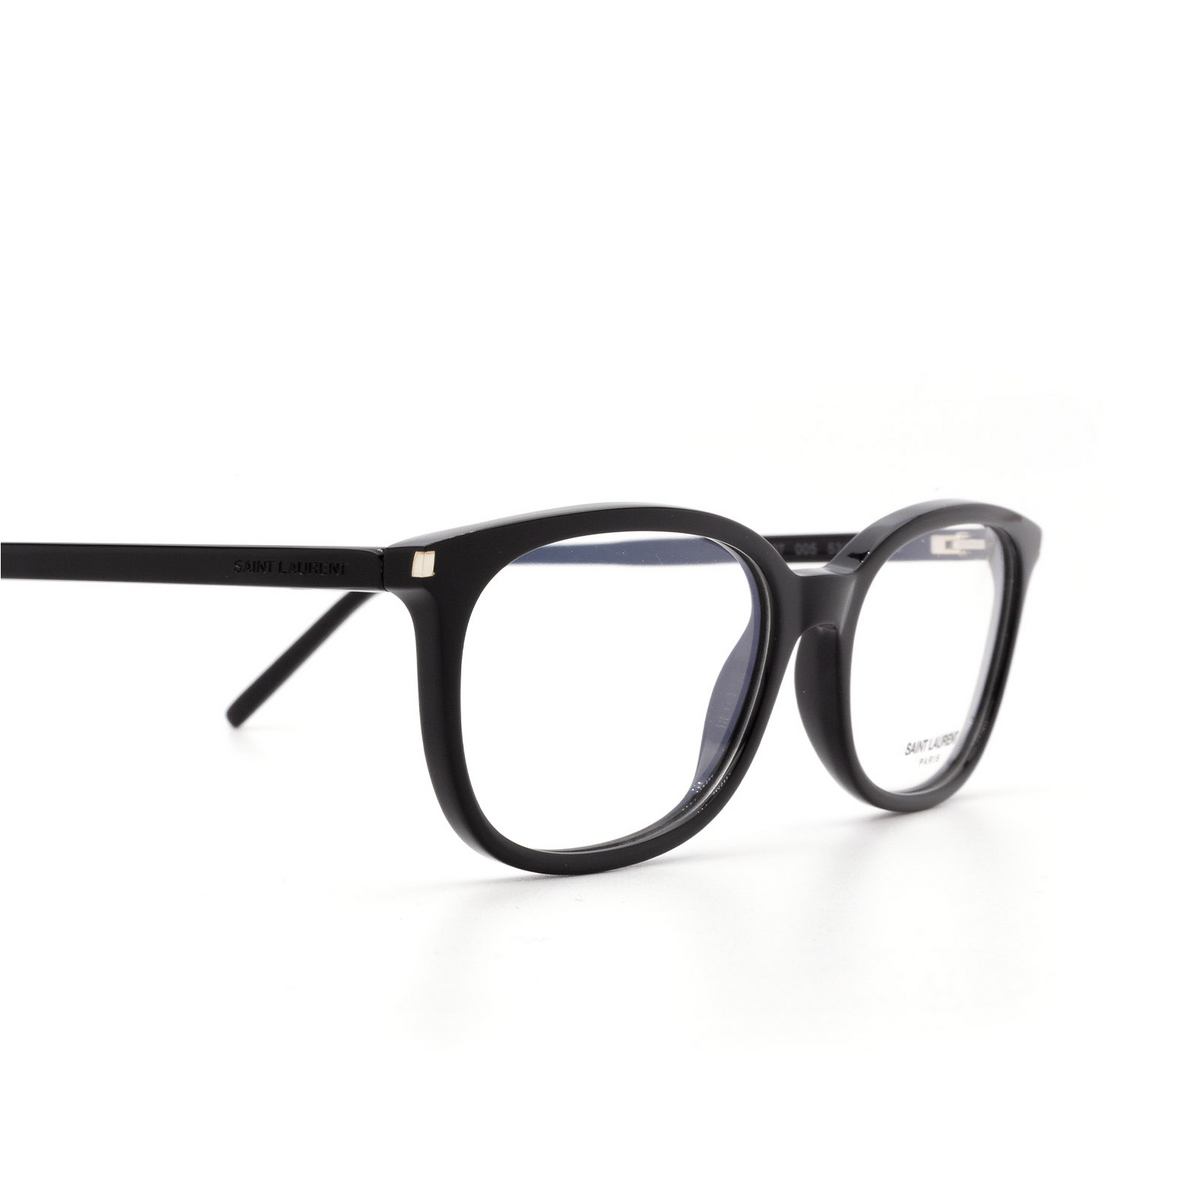 Saint Laurent® Rectangle Eyeglasses: SL 297 color Black 005 - 3/3.